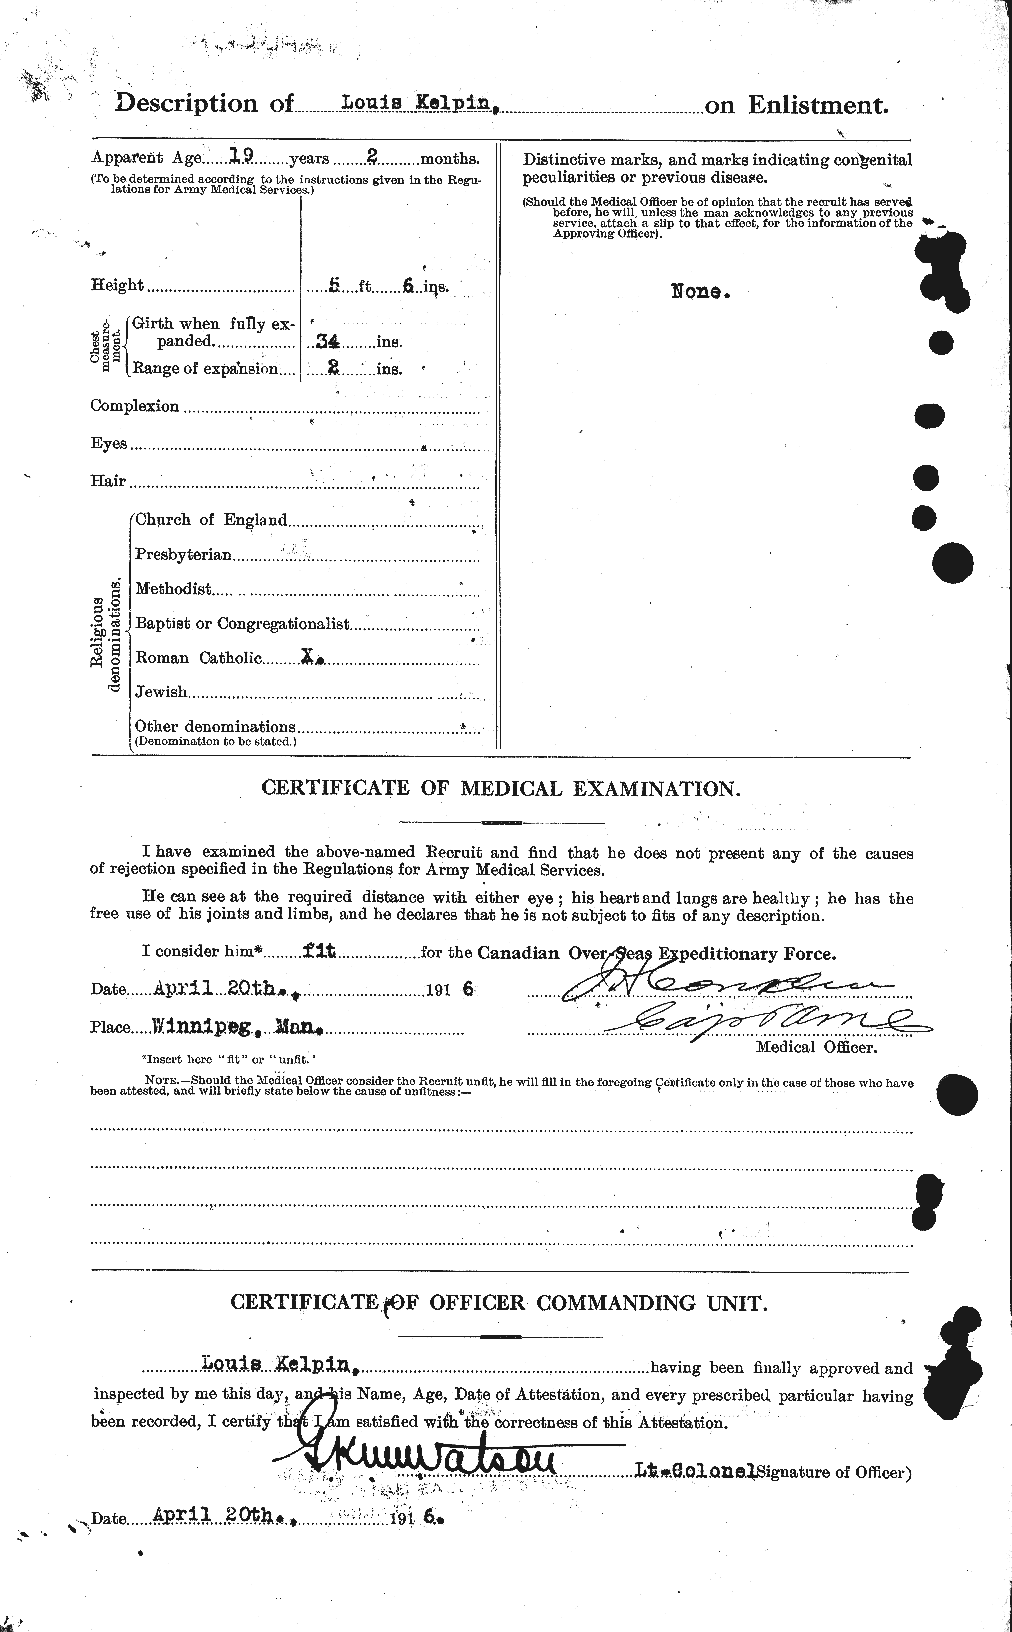 Dossiers du Personnel de la Première Guerre mondiale - CEC 429904b